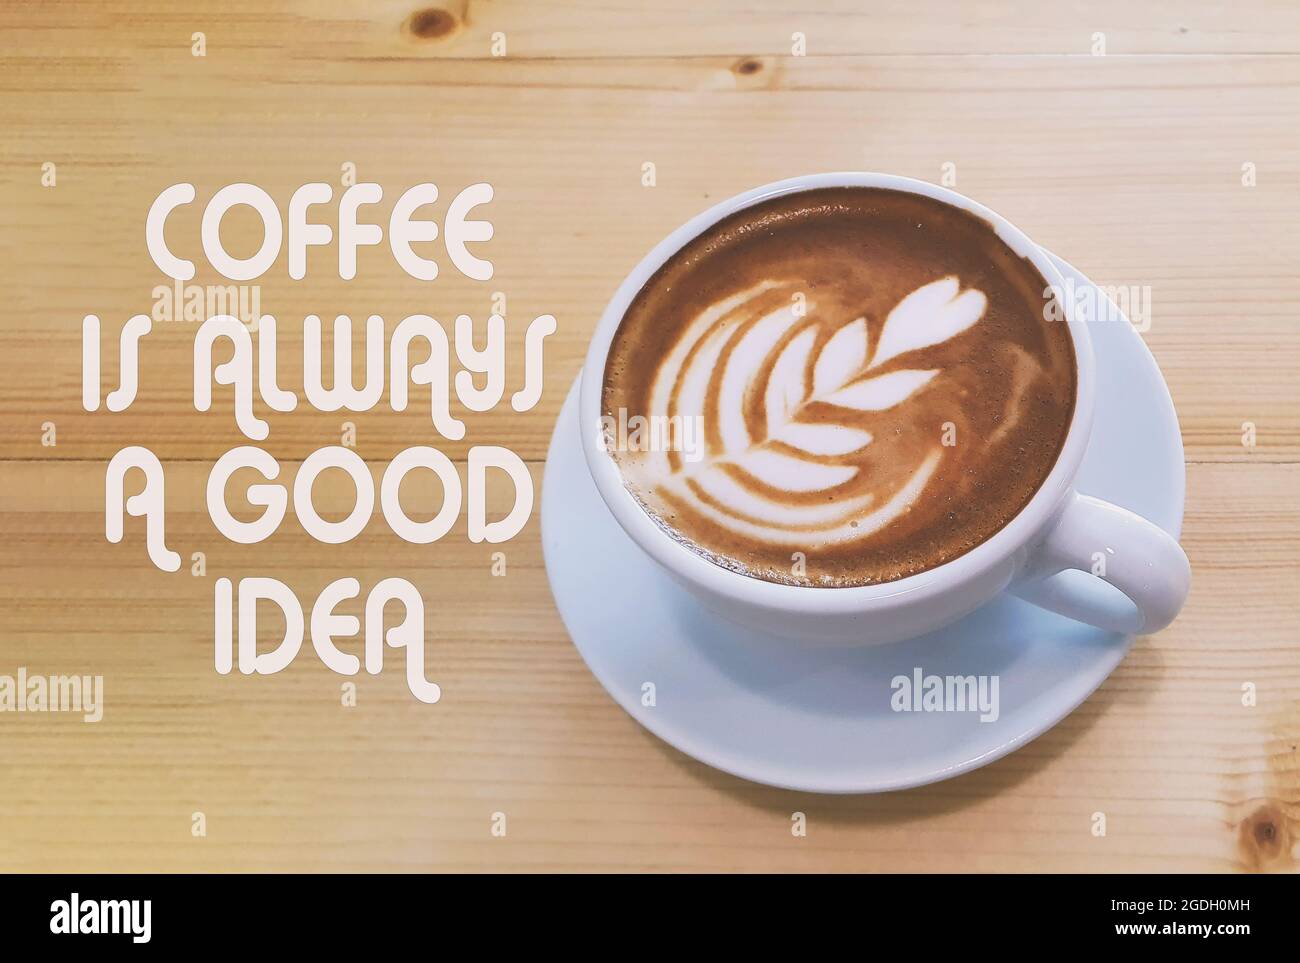 Inspiration Zitate - Kaffee ist immer eine gute Idee Stockfoto